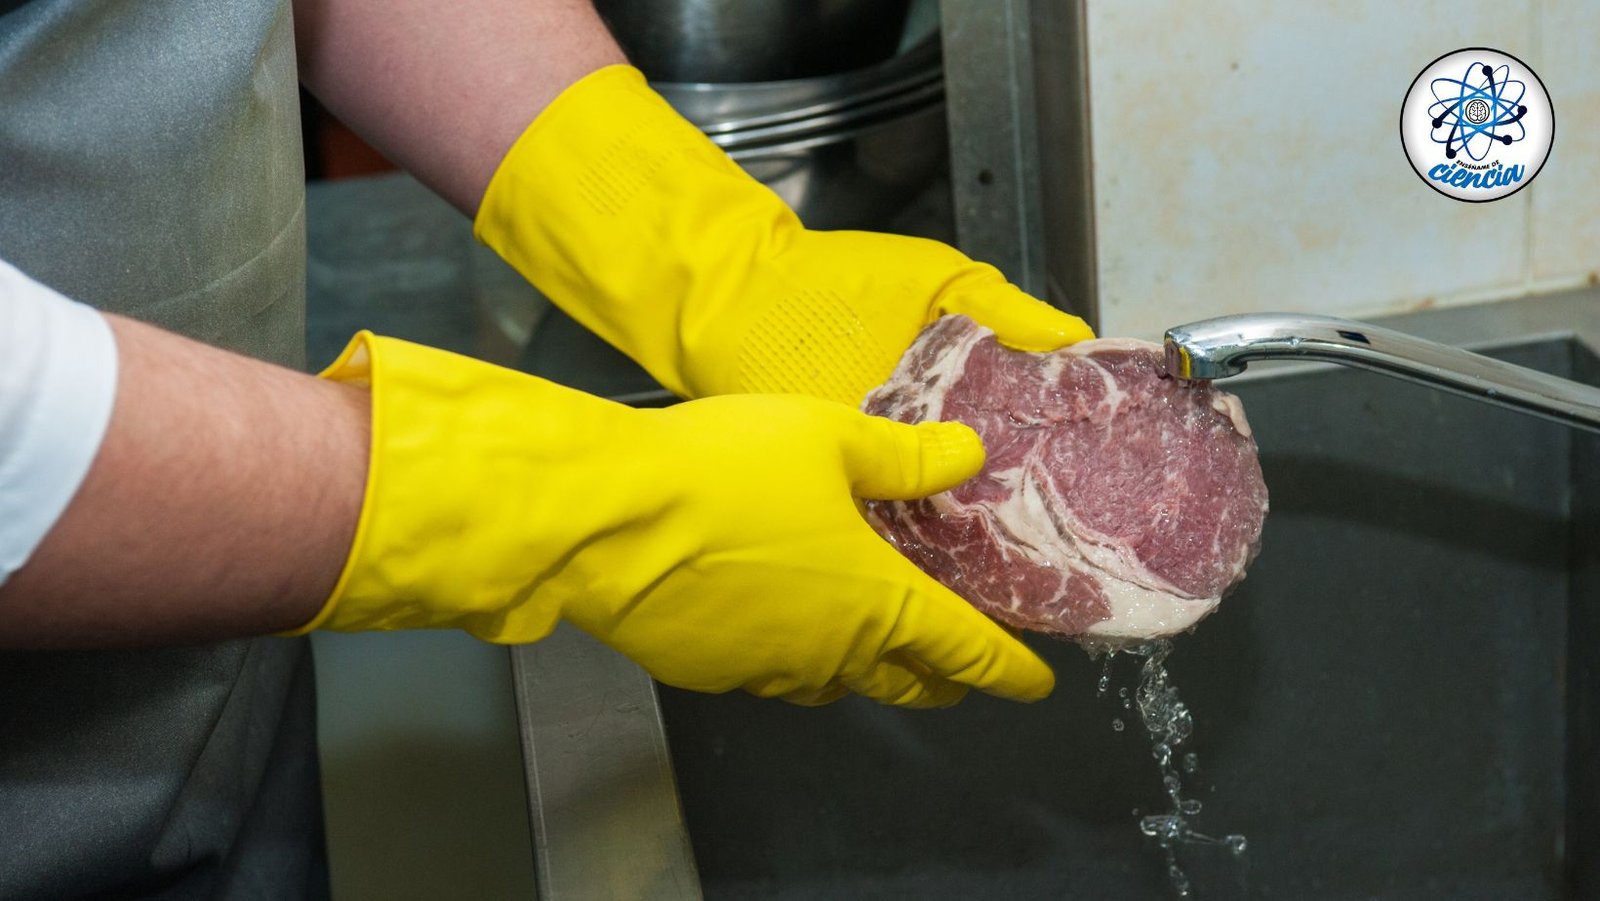 ¡Peligro! Nunca laves la carne de res o cerdo antes de cocinarla